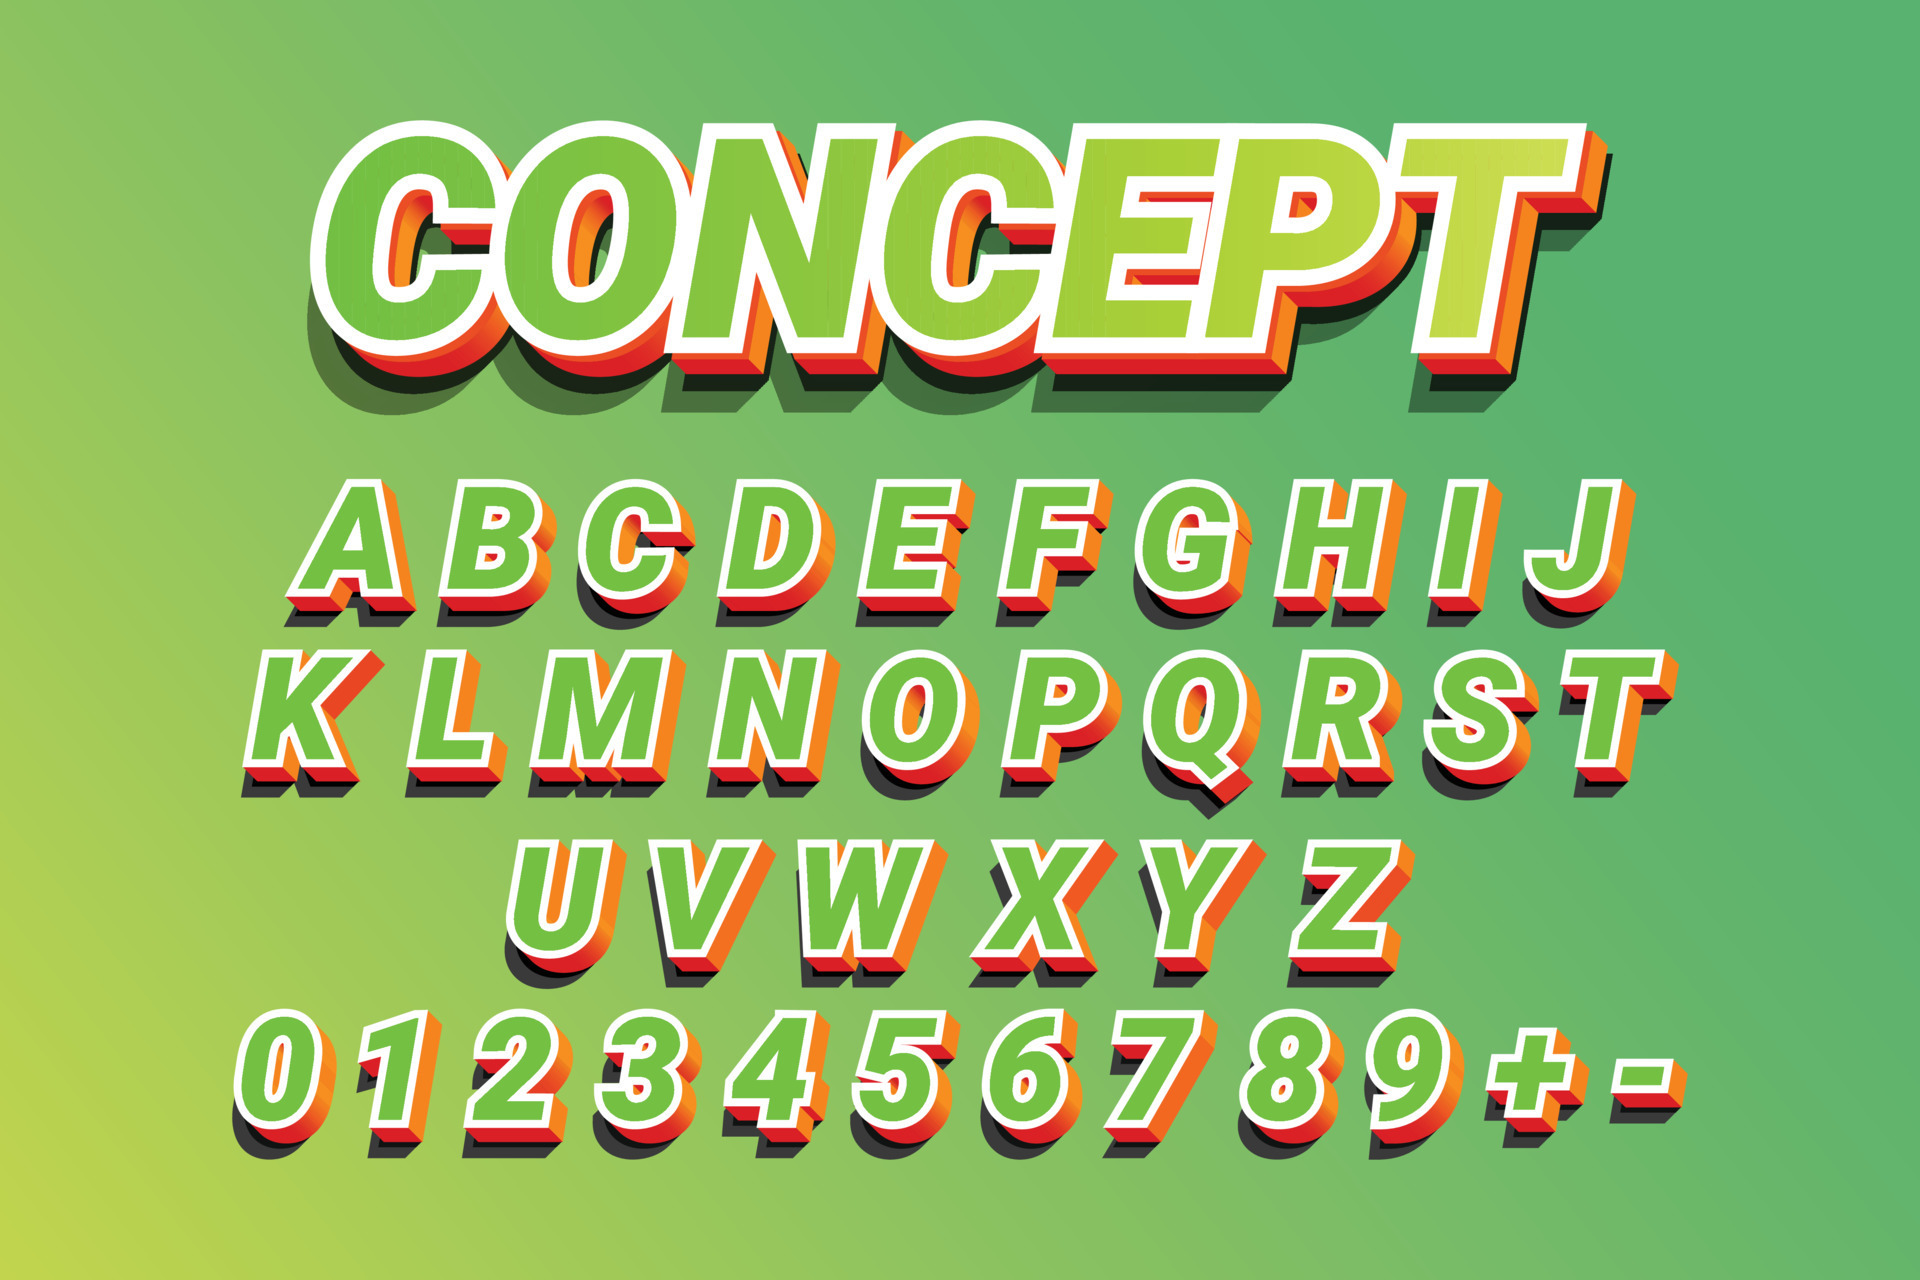 https://static.vecteezy.com/ti/gratis-vektor/p3/15806594-3d-buchstaben-und-zahlen-fette-grune-und-orangefarbene-schrift-grossbuchstaben-fur-werbung-isometrische-3dalphabete-volumetrische-zeichenbrettbuchstaben-mit-schatten-illustrator-texteffekt-vektor.jpg